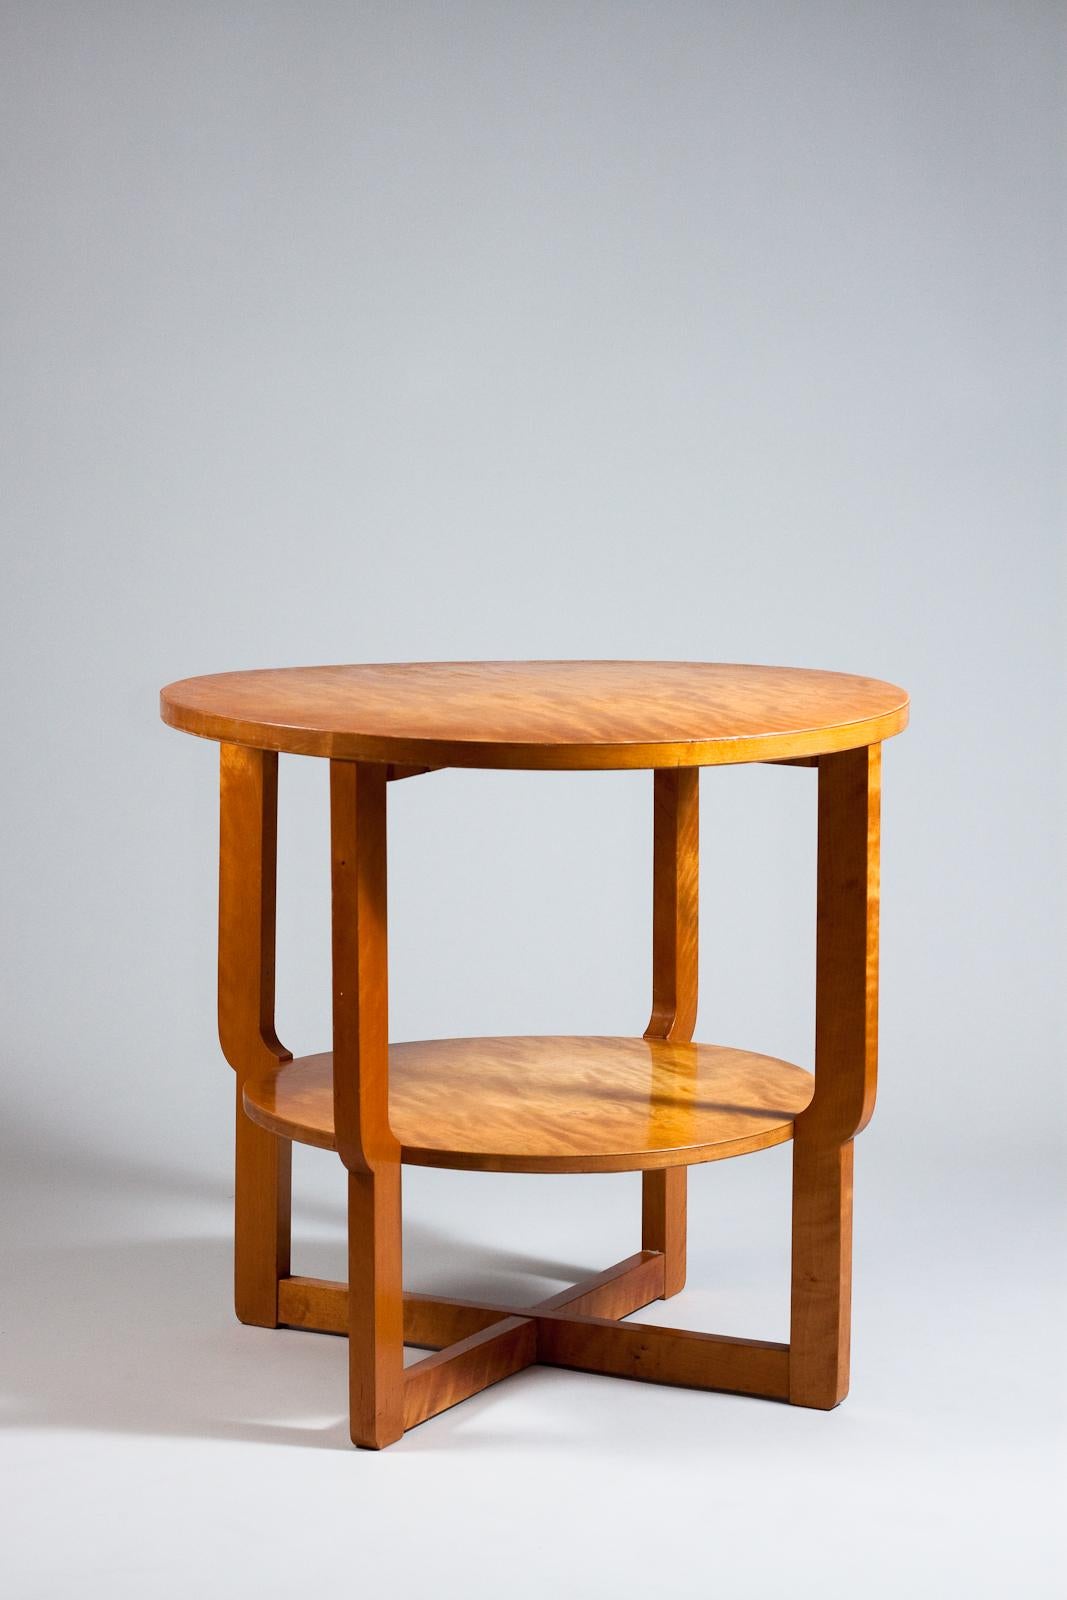 Der Maija Heikinheimo, ein Beistelltisch aus Birke aus den 1930er Jahren, ist eine reizvolle Ergänzung für jede Sammlung von Vintage-Designermöbeln. Dieser fachmännisch gefertigte und in einem auffälligen Birkenton gehaltene Tisch ist perfekt, um